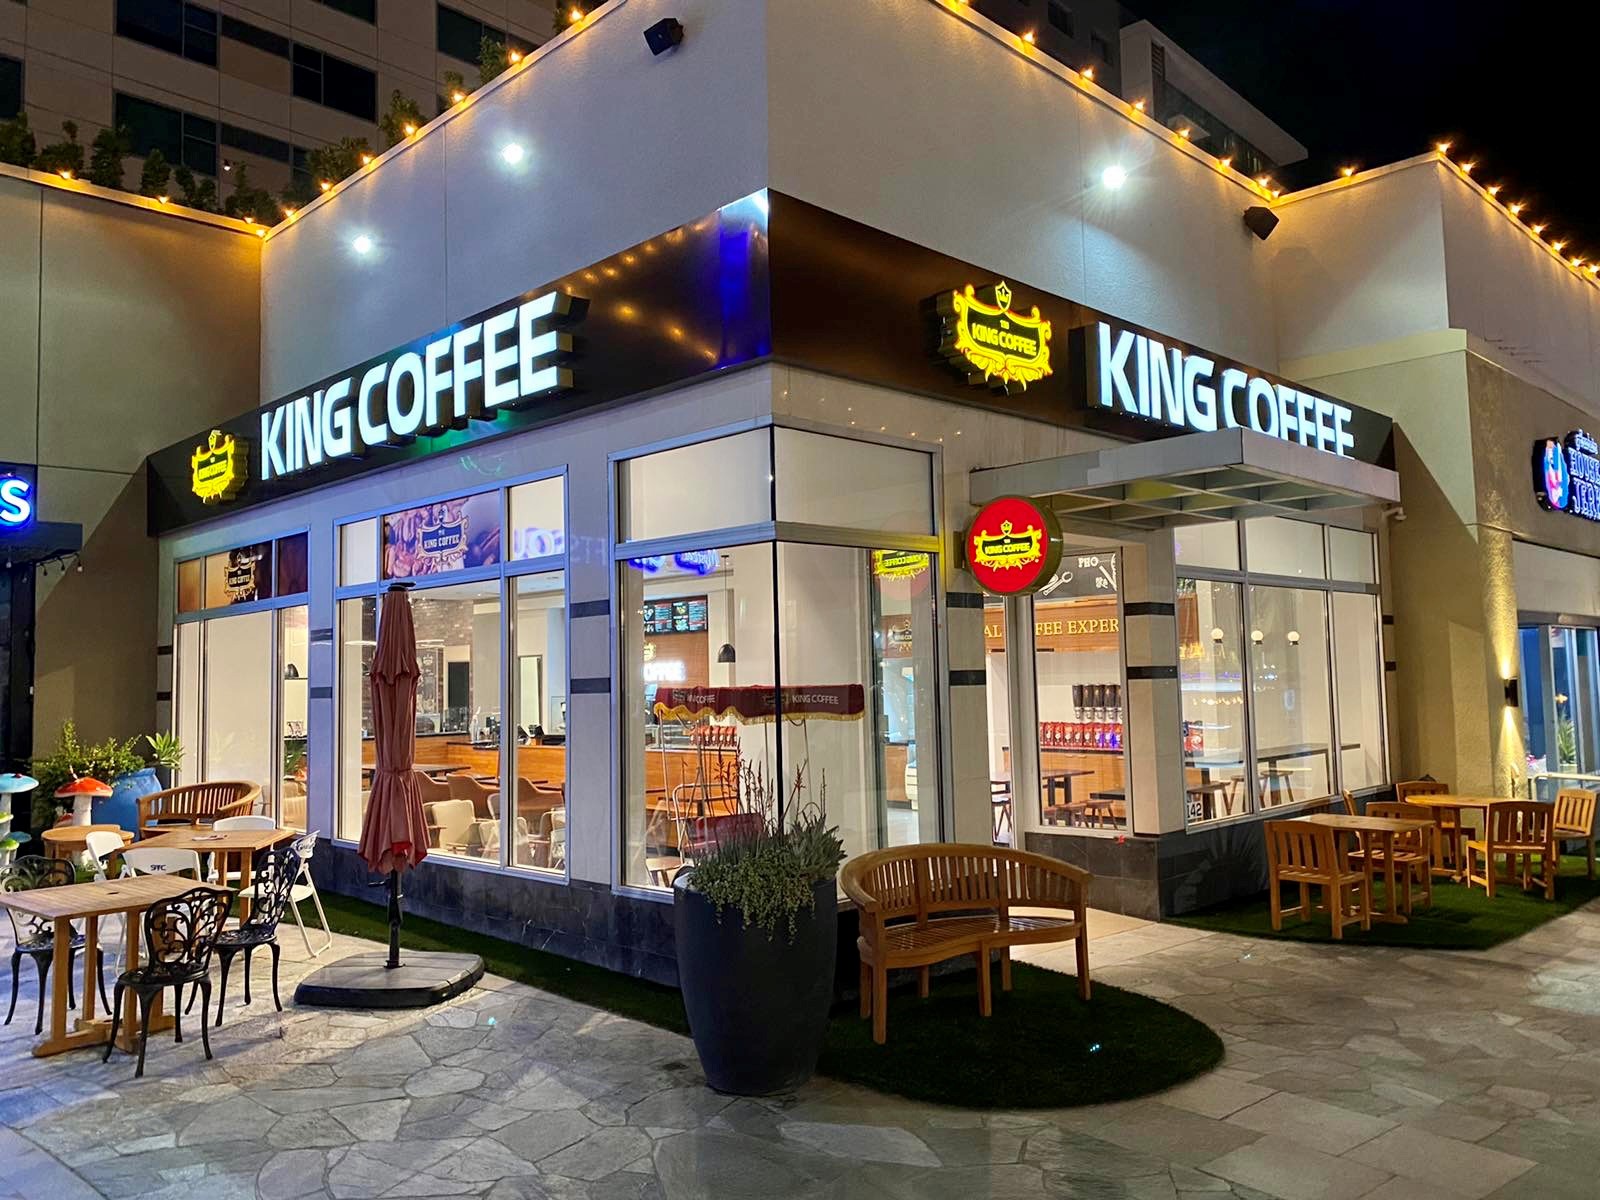 TNI King Coffee khai trương quán cà phê đầu tiên tại Hoa Kỳ - 1